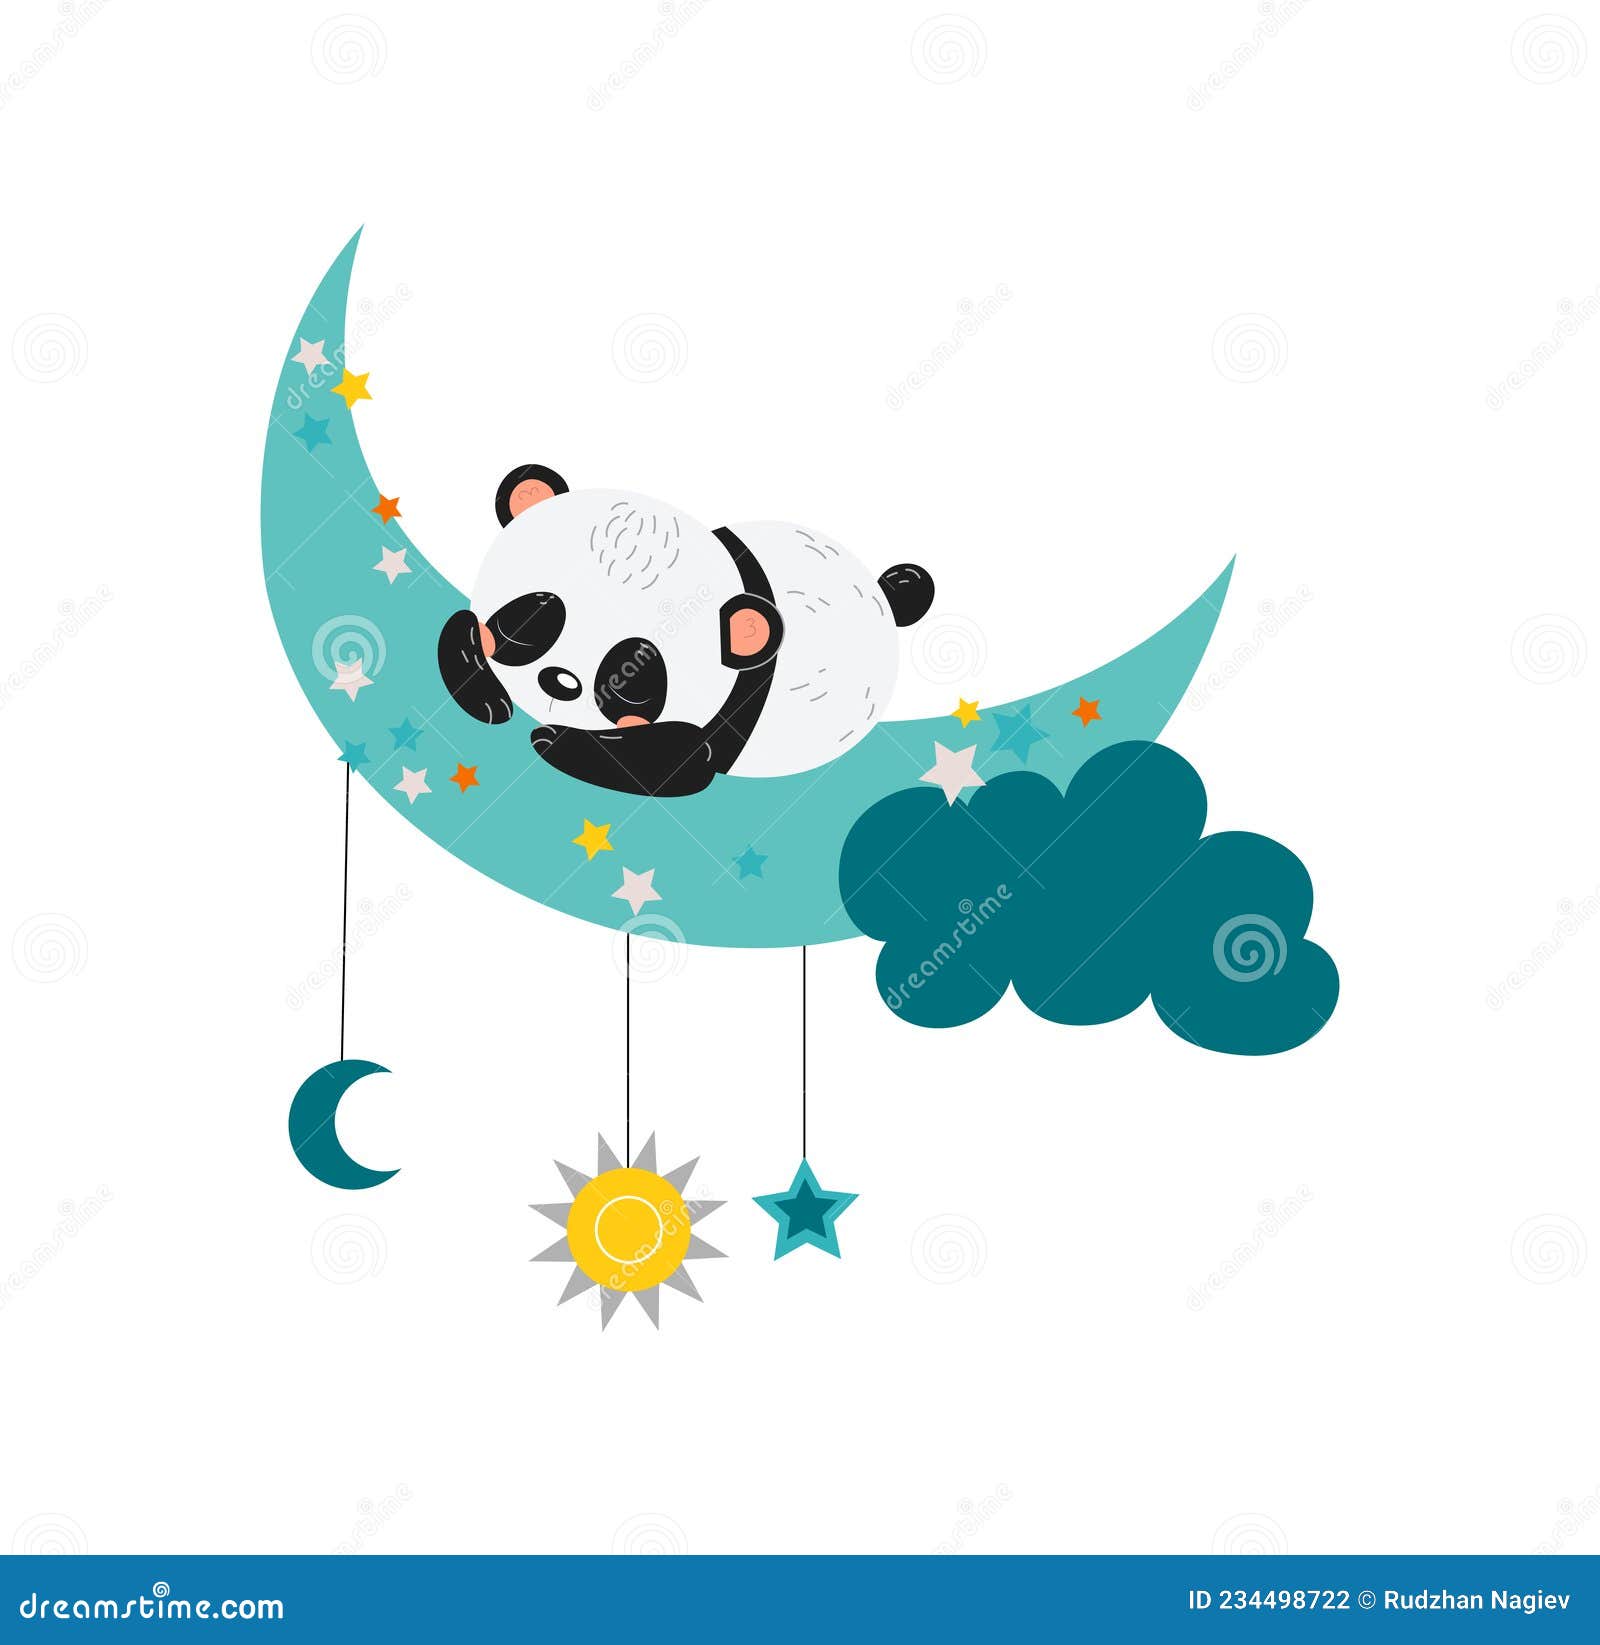 Bebê Panda Dorme Na Cama. Sonho. Noite E Estrelas. Ilustração